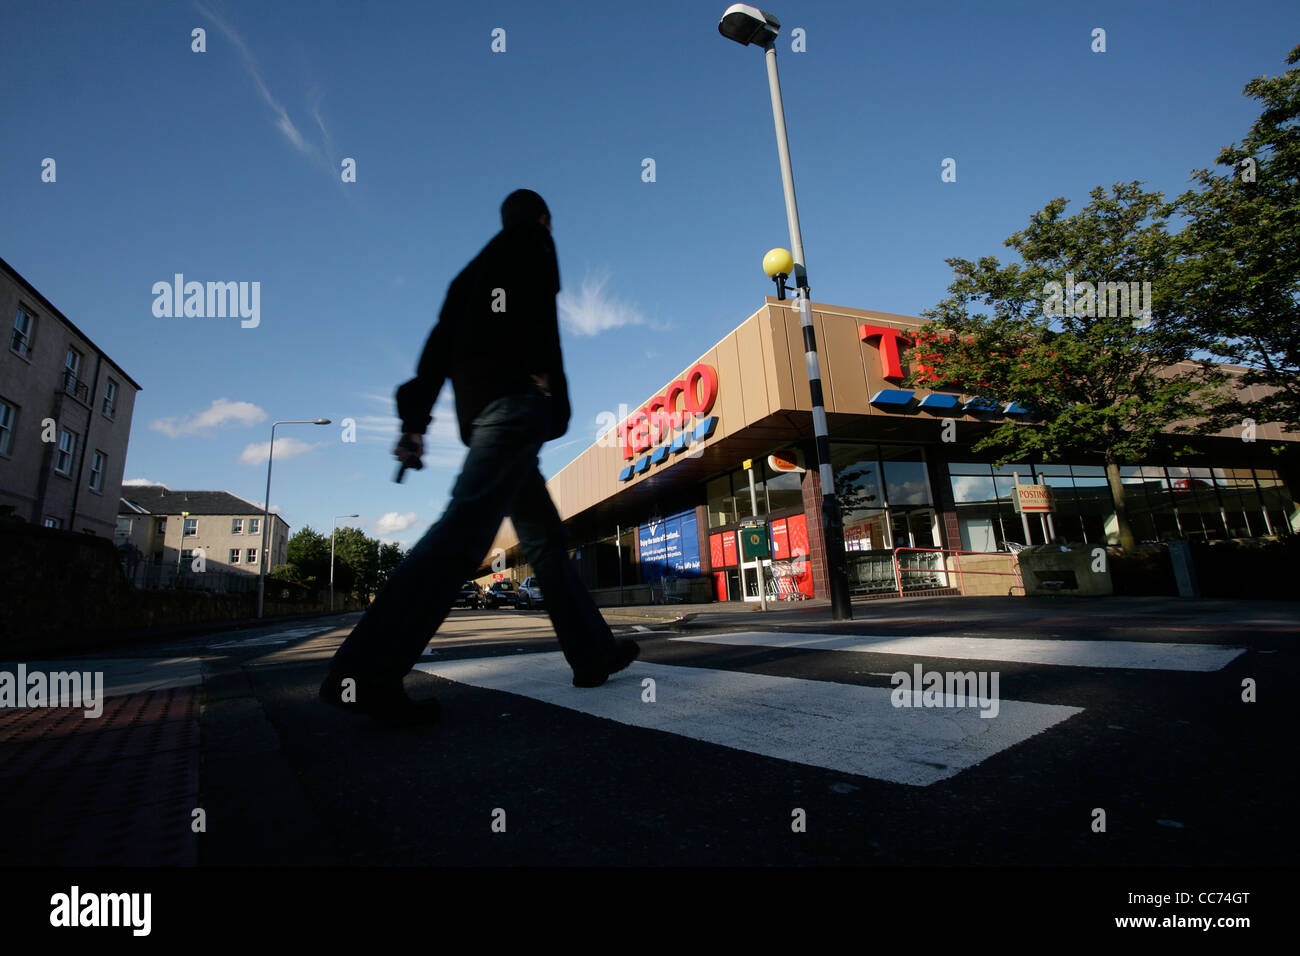 A man walks across a pedestrian crossing towards a Tesco supermarket Stock Photo